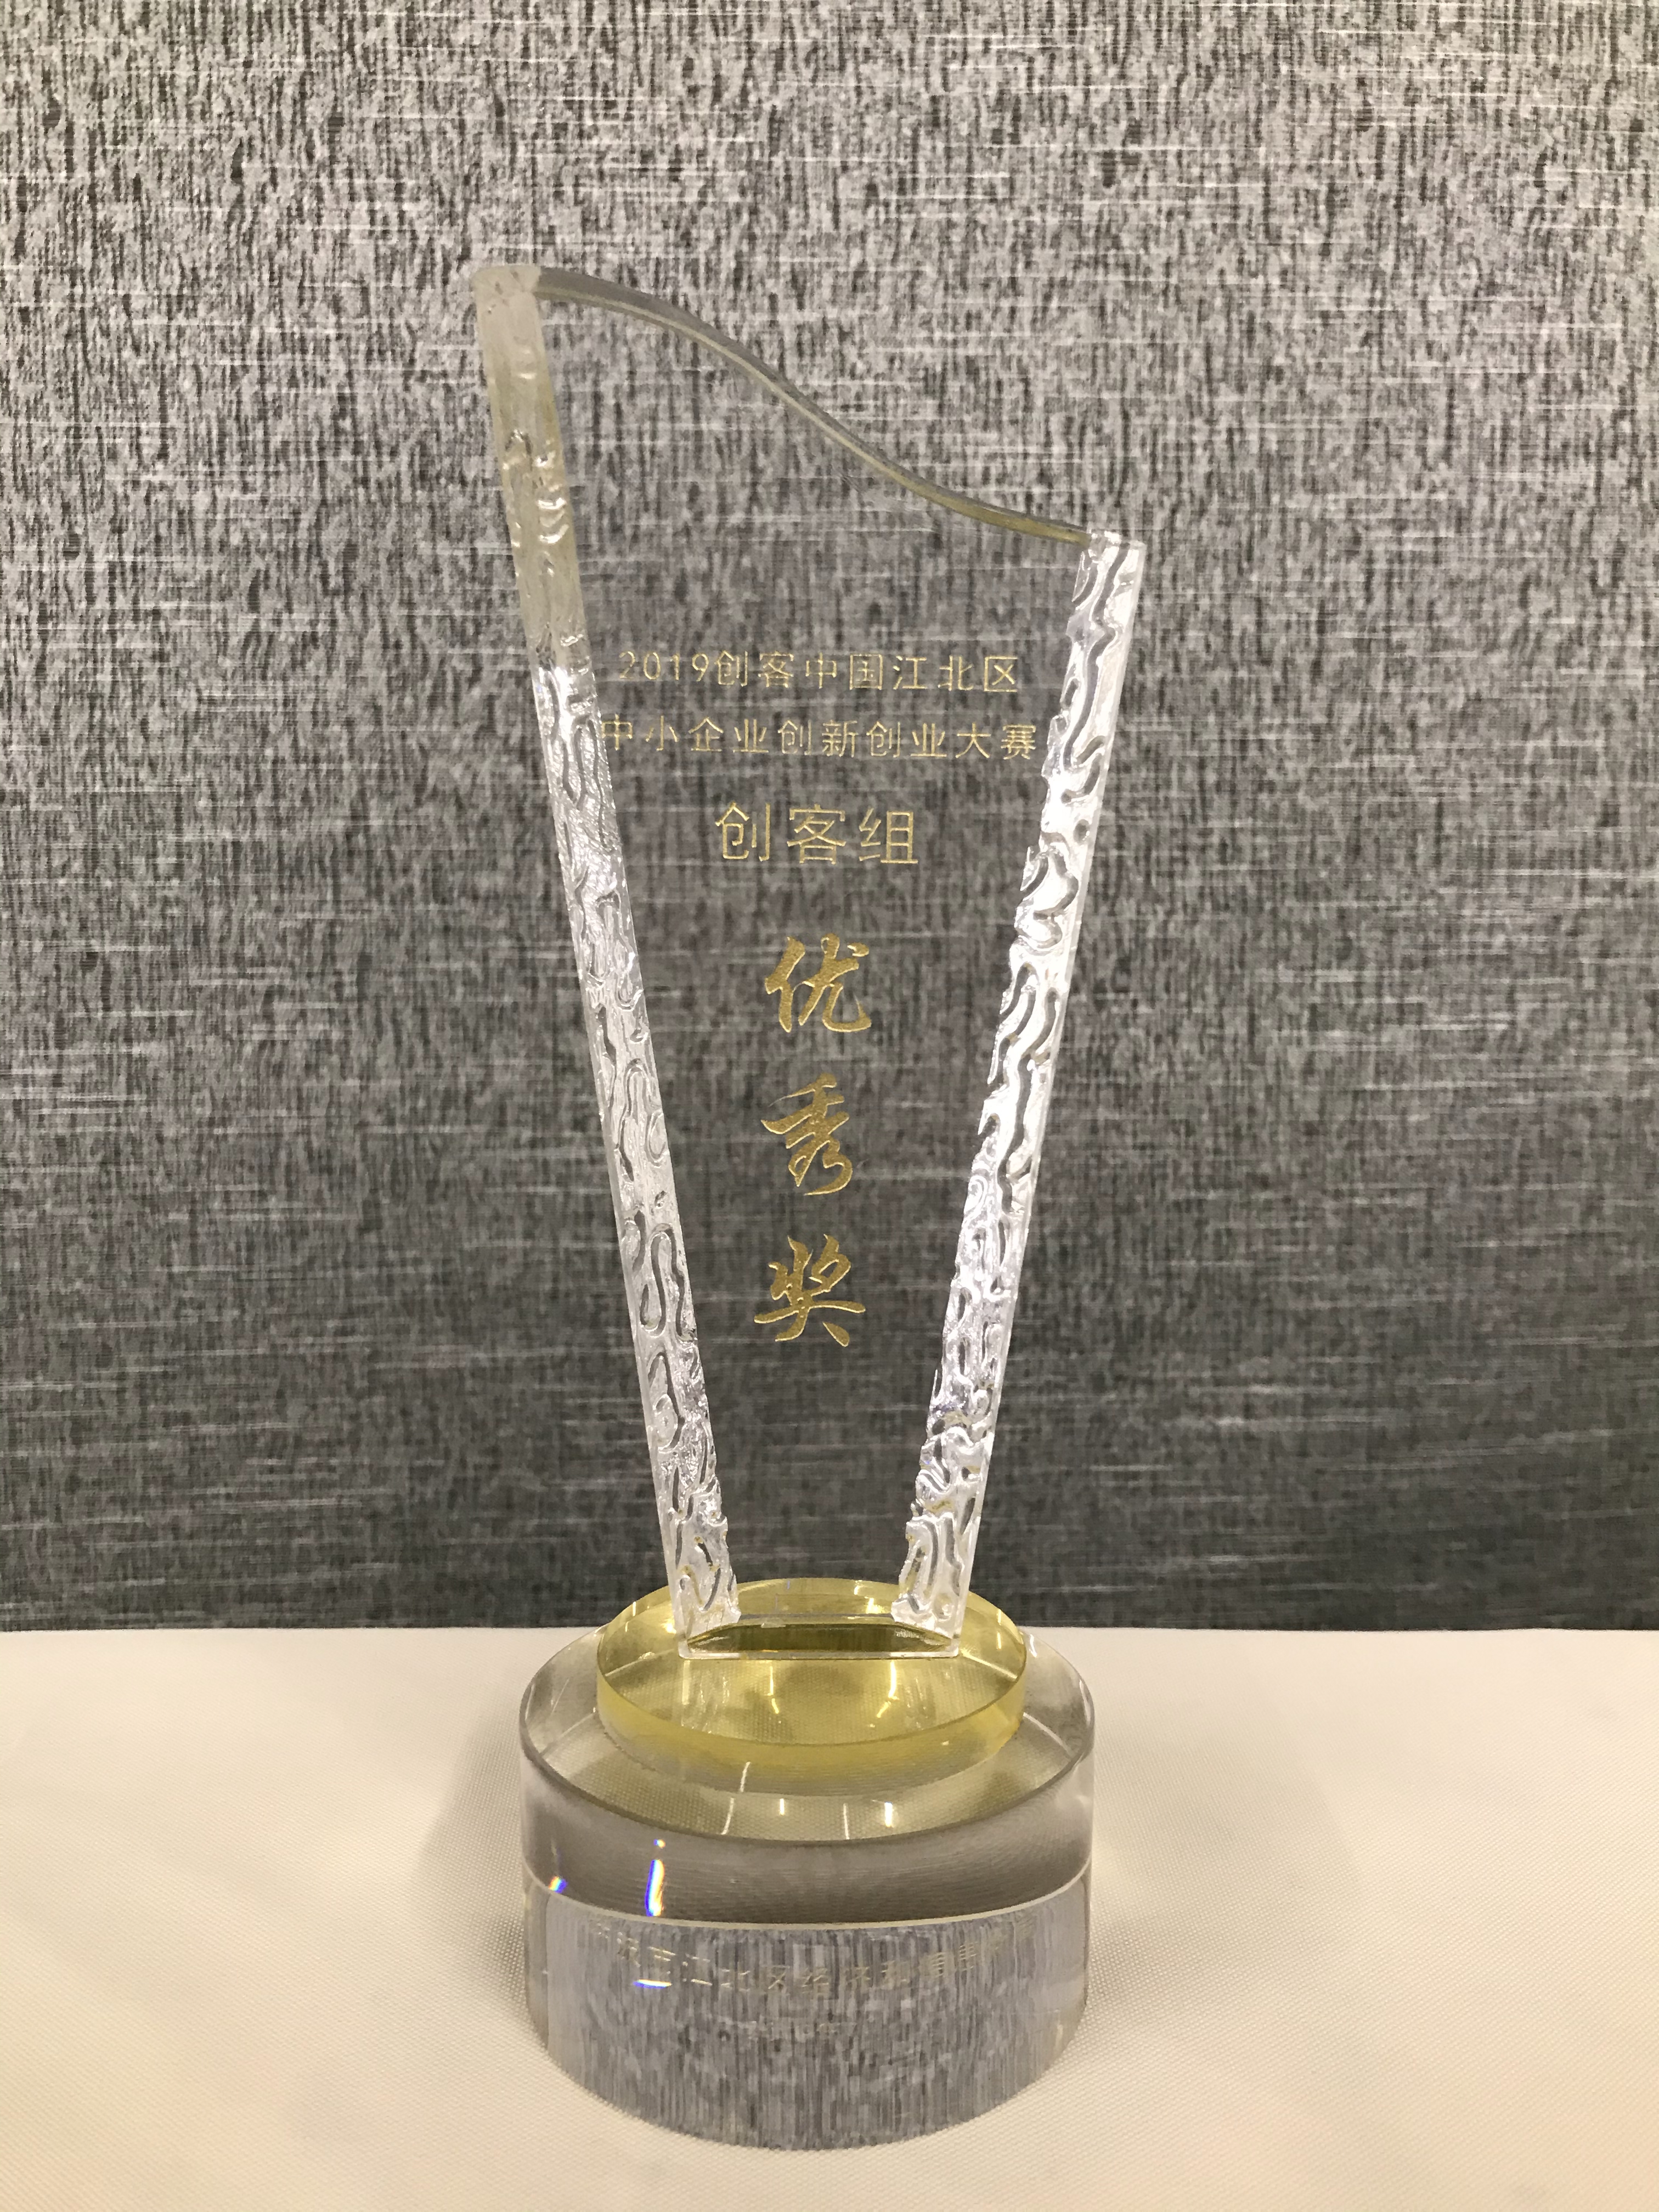 2019年创客中国江北区中小企业创新创业大赛 创客组优秀奖